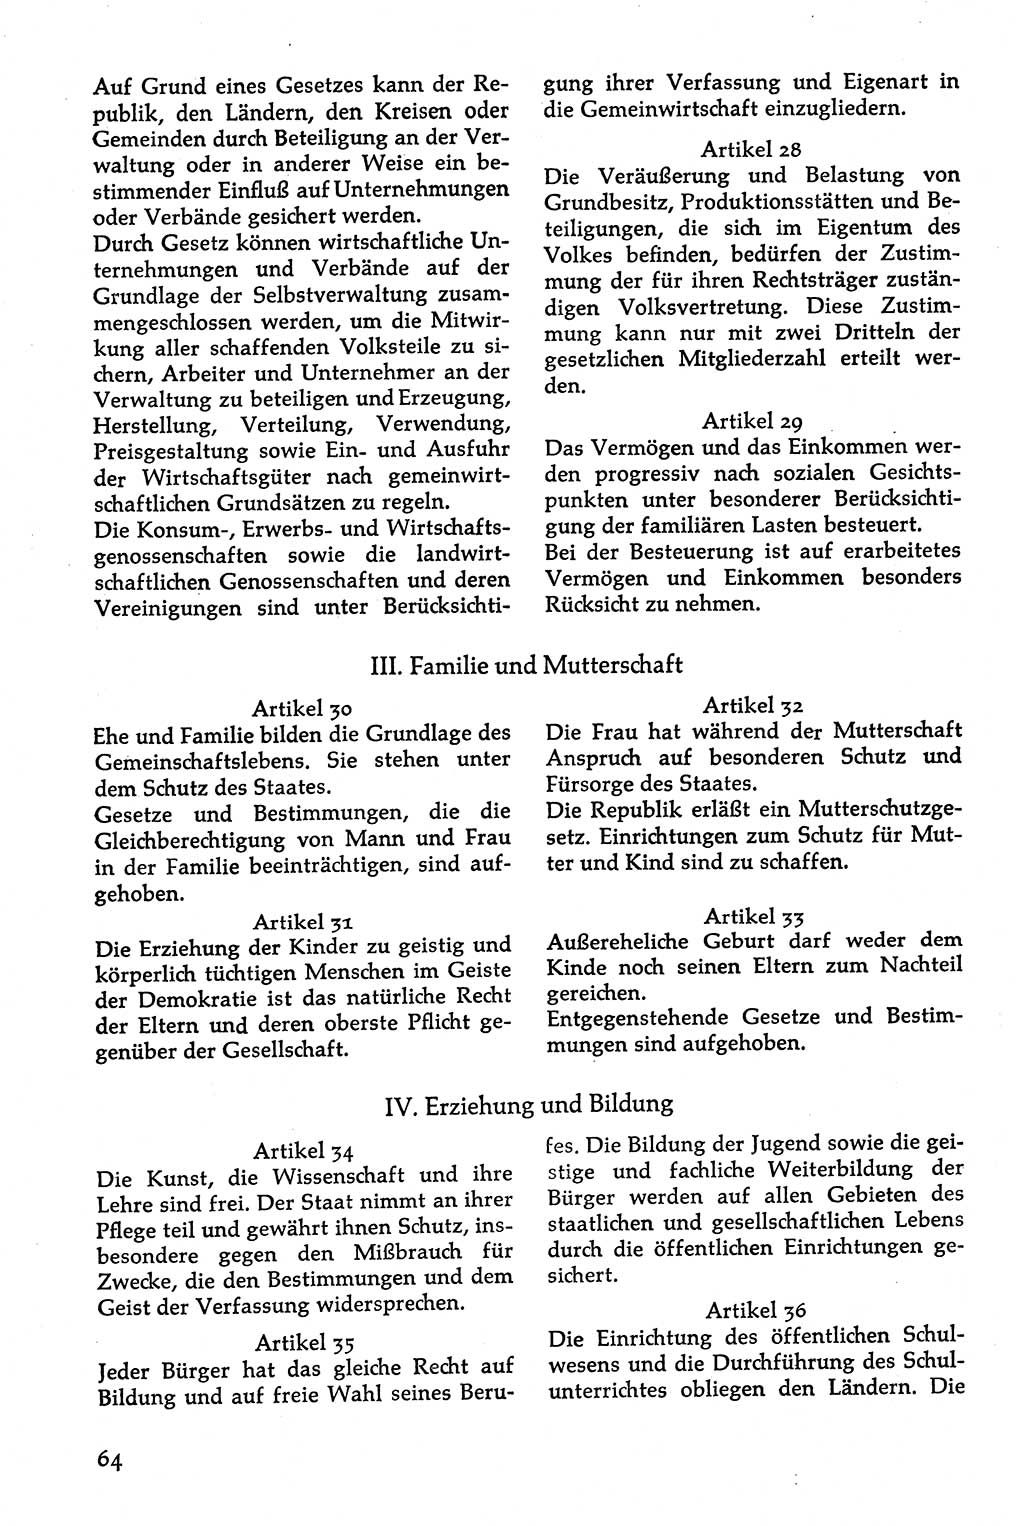 Volksdemokratische Ordnung in Mitteldeutschland [Deutsche Demokratische Republik (DDR)], Texte zur verfassungsrechtlichen Situation 1963, Seite 64 (Volksdem. Ordn. Md. DDR 1963, S. 64)